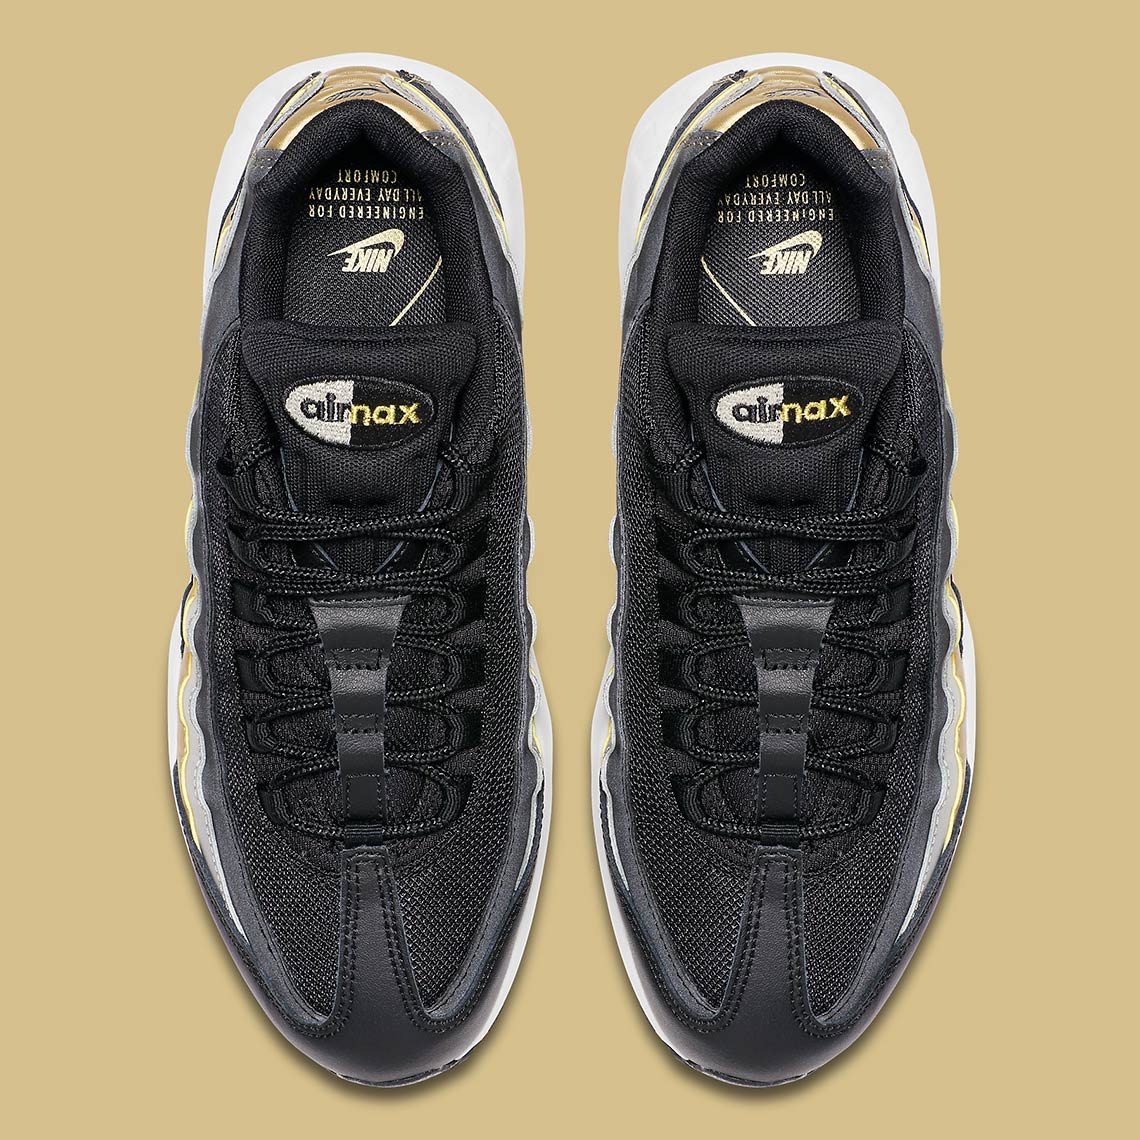 Nike Air Max 95 Metallic Gold + Silver BQ4554-001 | SneakerNews.com